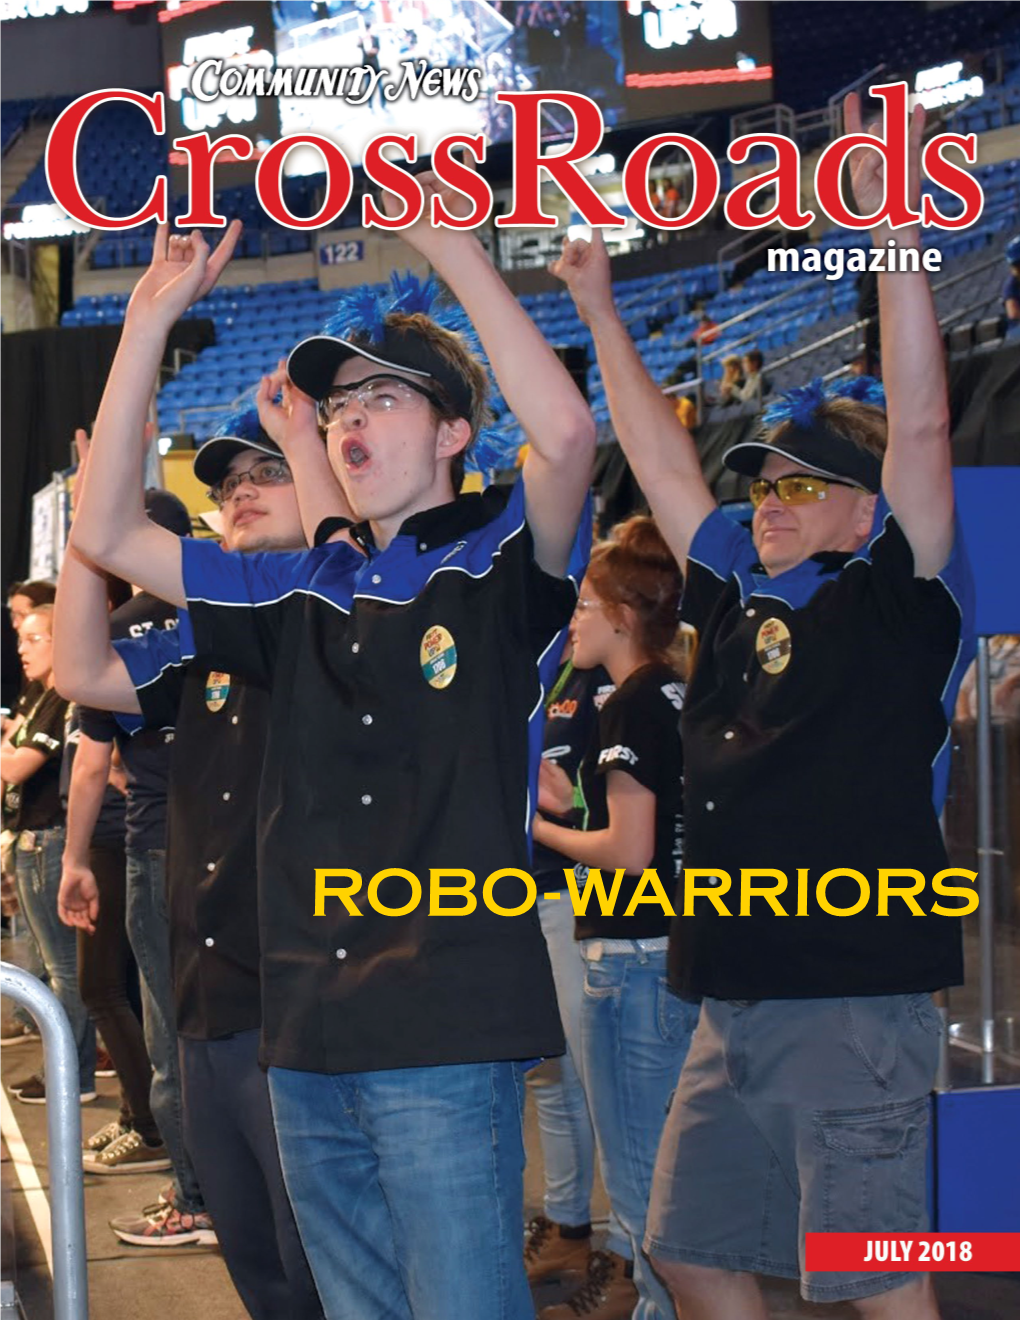 Robo-Warriors